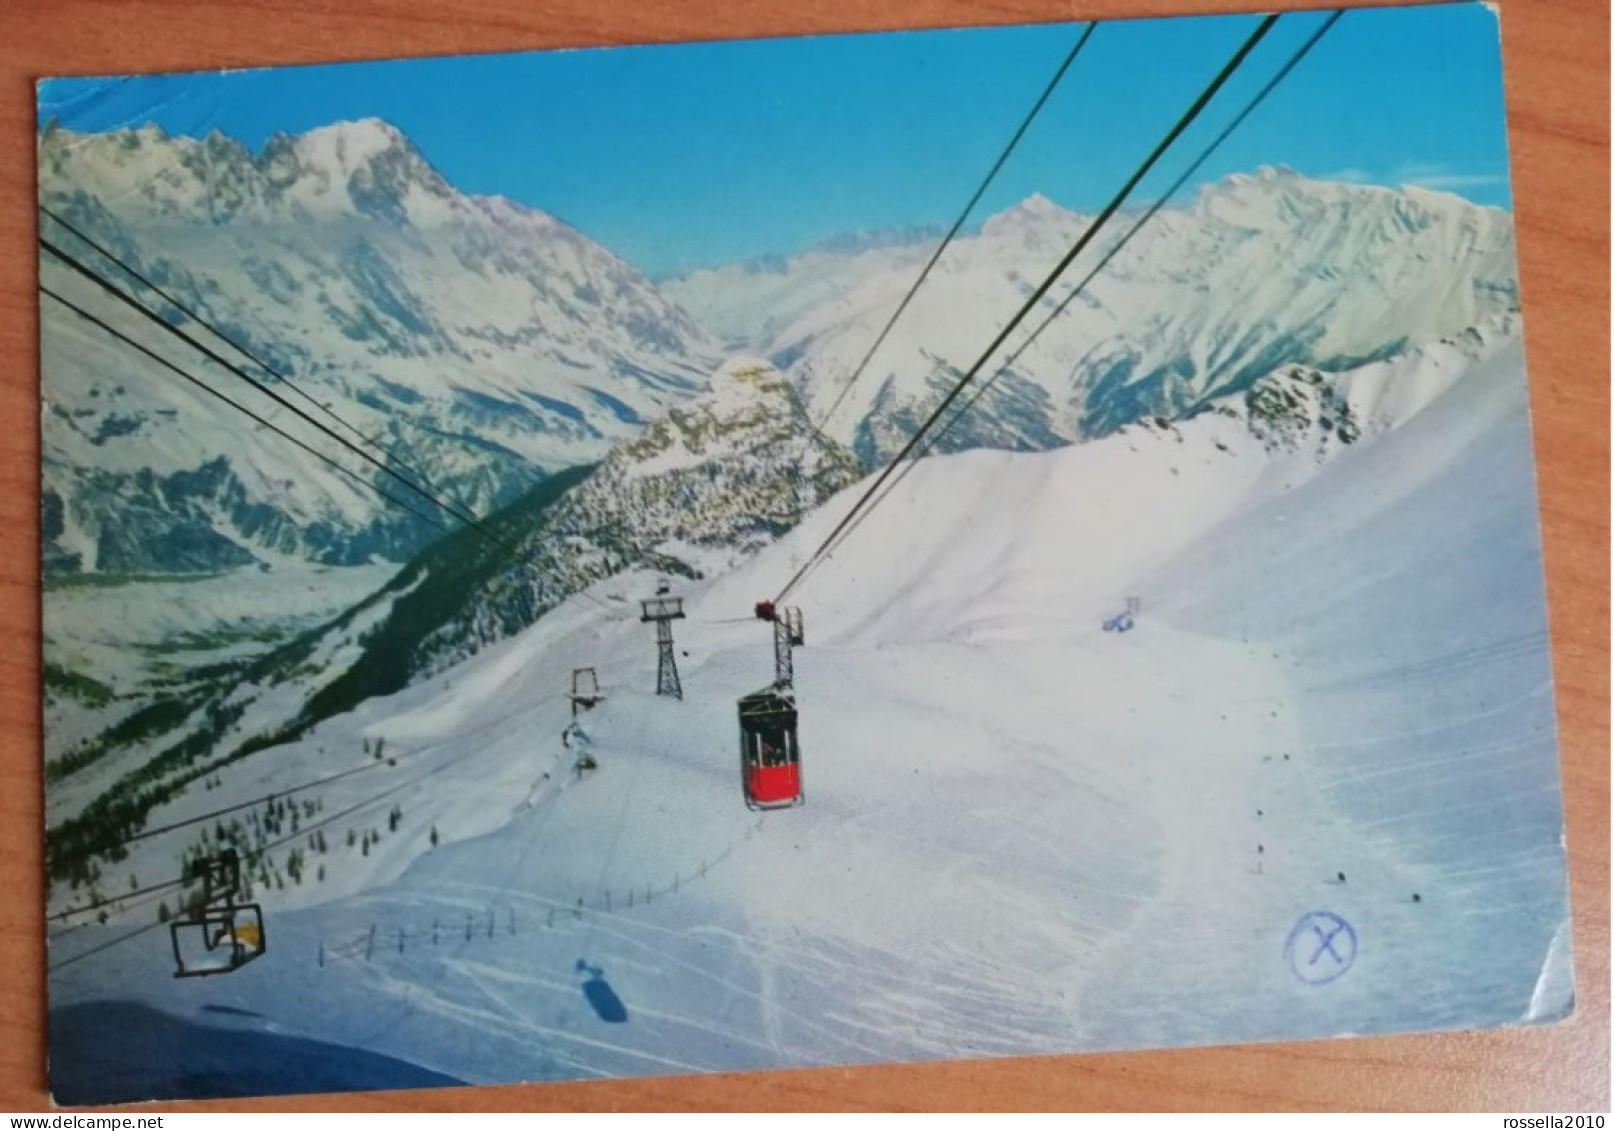 Cartolina ITALIA 1985 VALLE D' AOSTA COURMAYEUR FUNIVIA DEL COLLE DI JOULA  Italy Postcard ITALIEN Ansichtskarten - Aosta